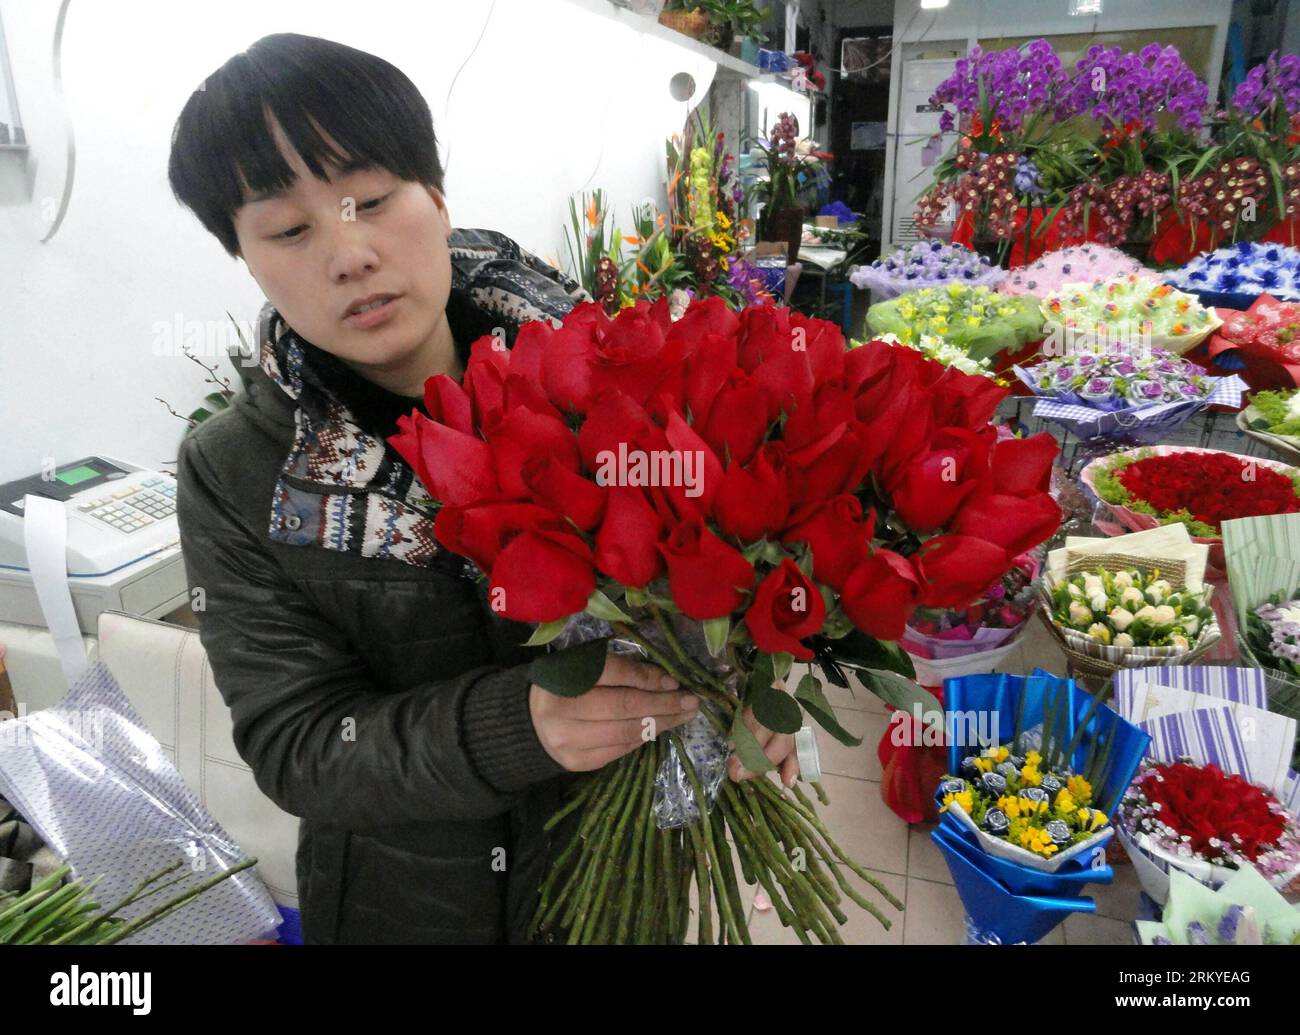 Bildnummer: 59206986 Datum: 11.02.2013 Copyright: imago/Xinhua SUZHOU, Ein Mitarbeiter Eines Blumengeschäfts, bereitet Rosen für den bevorstehenden Valentinstag in Suzhou, ostchinesische Provinz Jiangsu, am 11. Februar 2013 vor. (Xinhua/Wang Jiankang) (ry) CHINA-VALENTINE S DAY-PREPARATION (CN) PUBLICATIONxNOTxINxCHN Gesellschaft Wirtschaft Vorbereitung Valentinstag Florist Blumengeschäft Blumen Premiere x2x xac 2013 quer o0 Blumenstrauss 59206986 Datum 11 02 2013 Copyright Imago XINHUA Suzhou ein Mitarbeiter des Blumenshops bereitet Rosen für den Sales Peak während des bevorstehenden Valentine S da vor Stockfoto